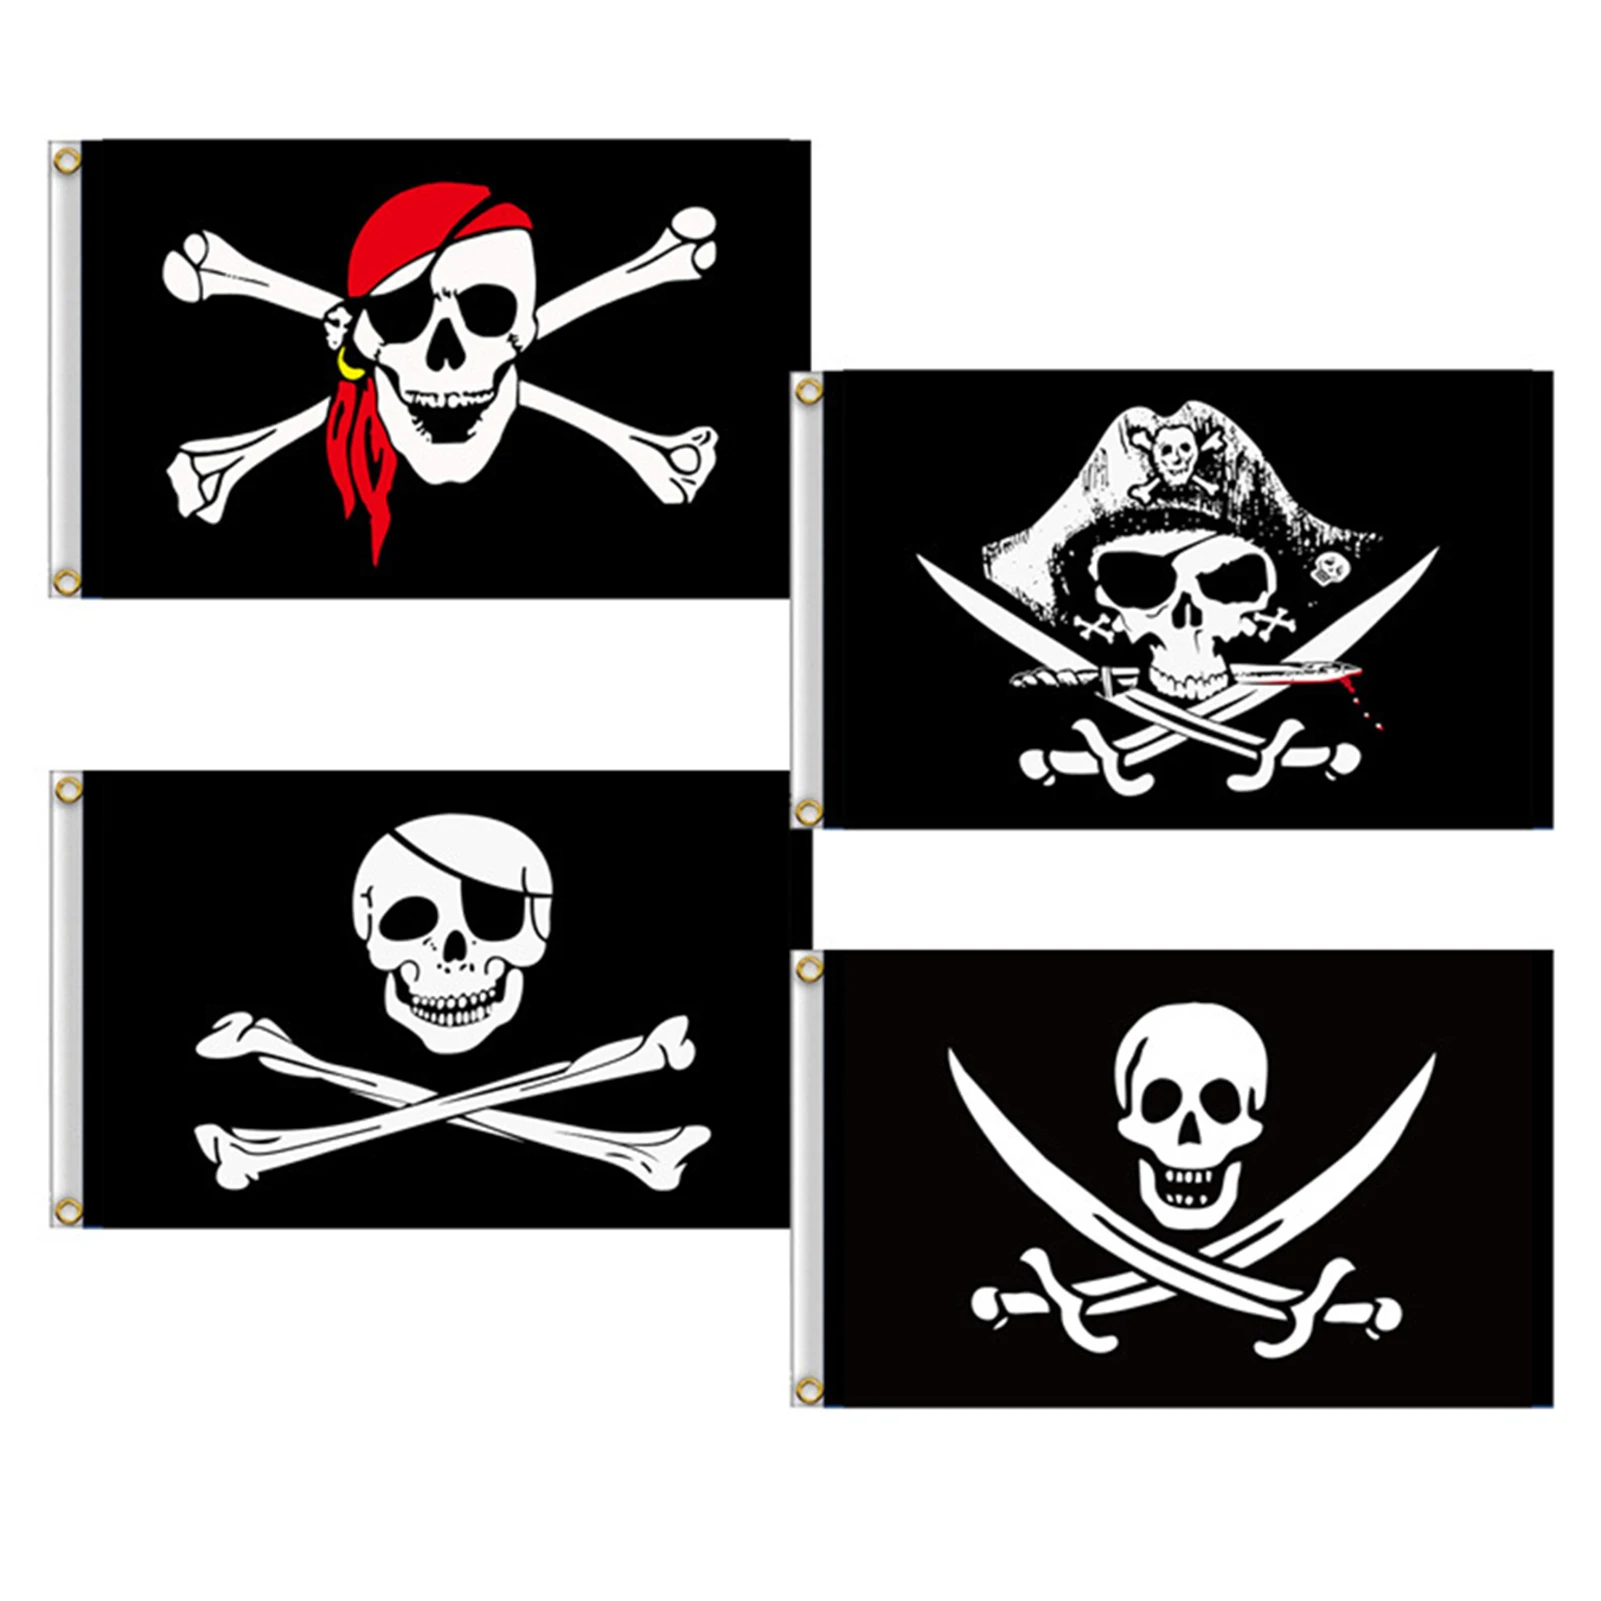 

Пиратский череп и флаг с черепом человека и костями для украшения вечерние и пиратских вечеринок